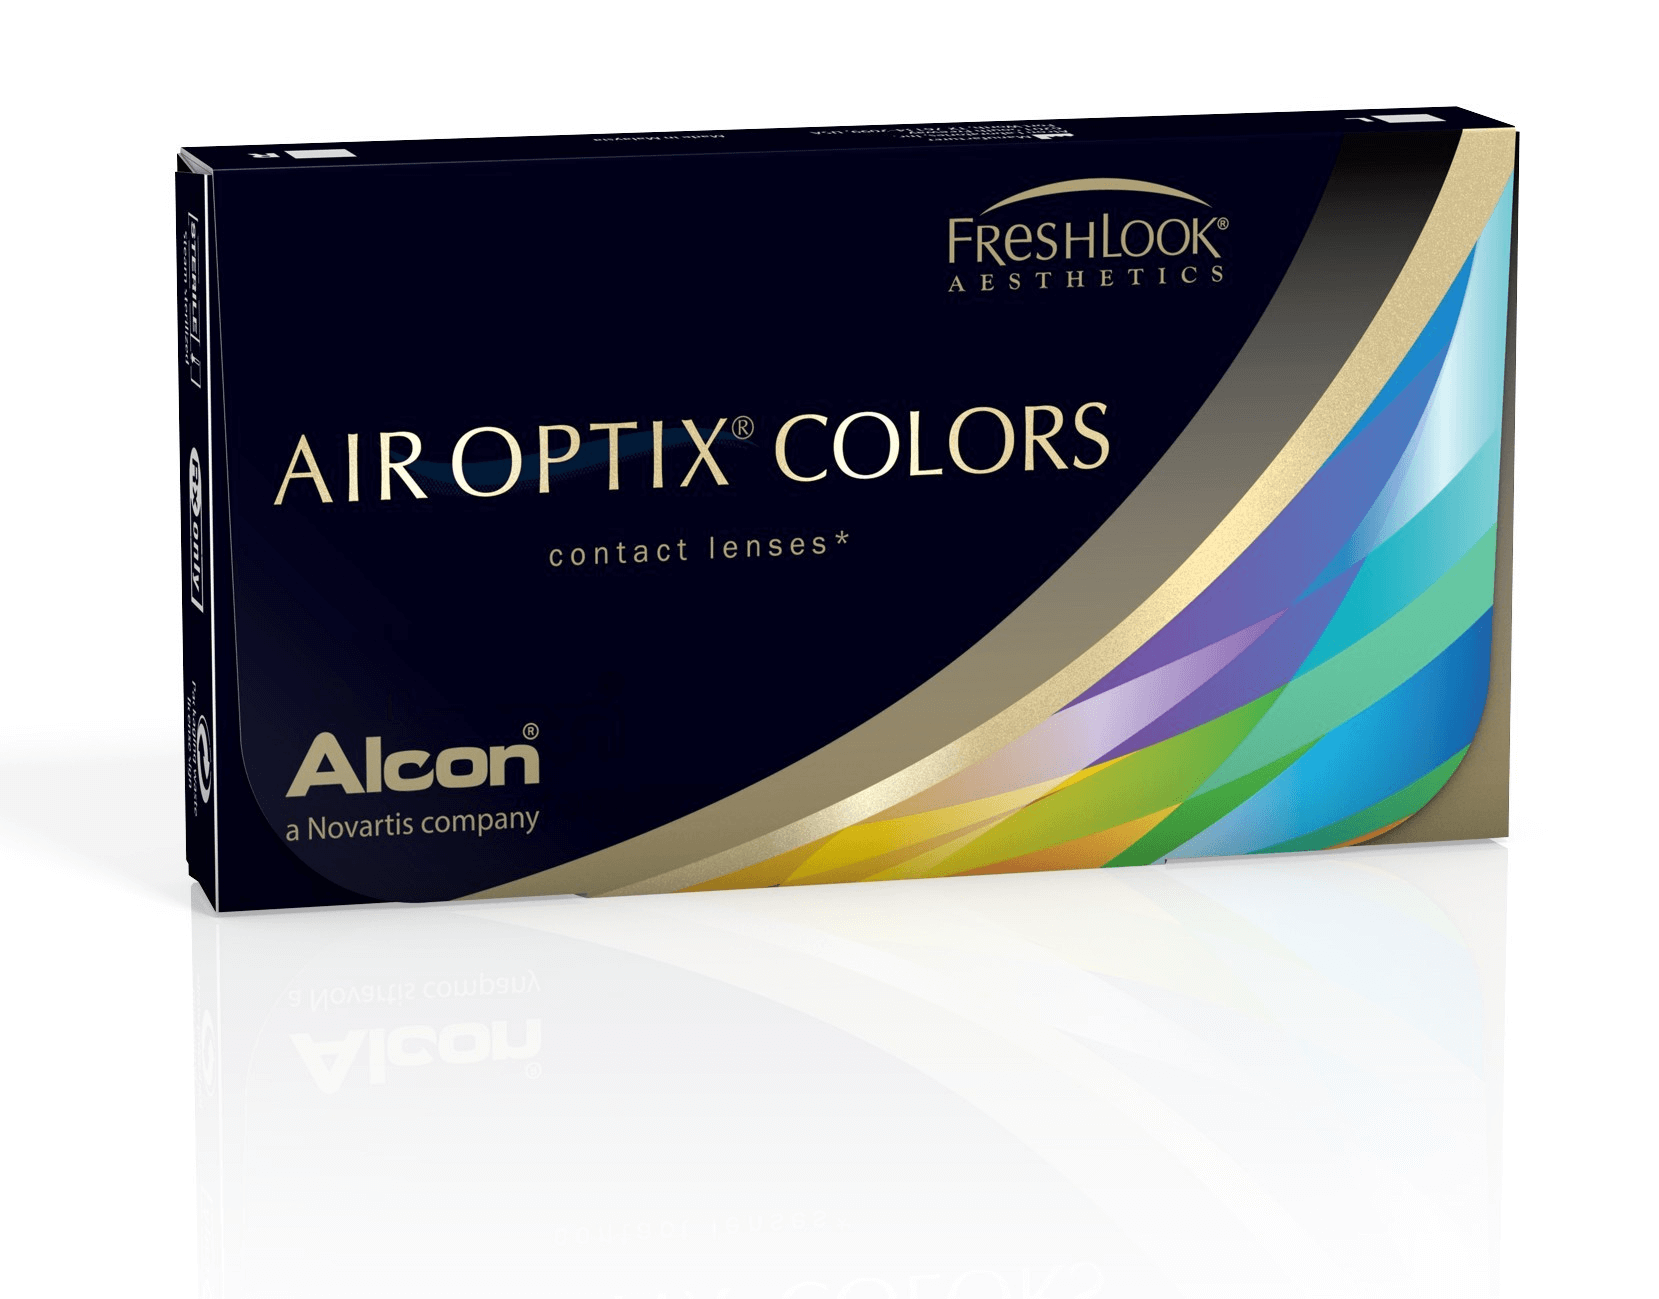 air-optix-colors